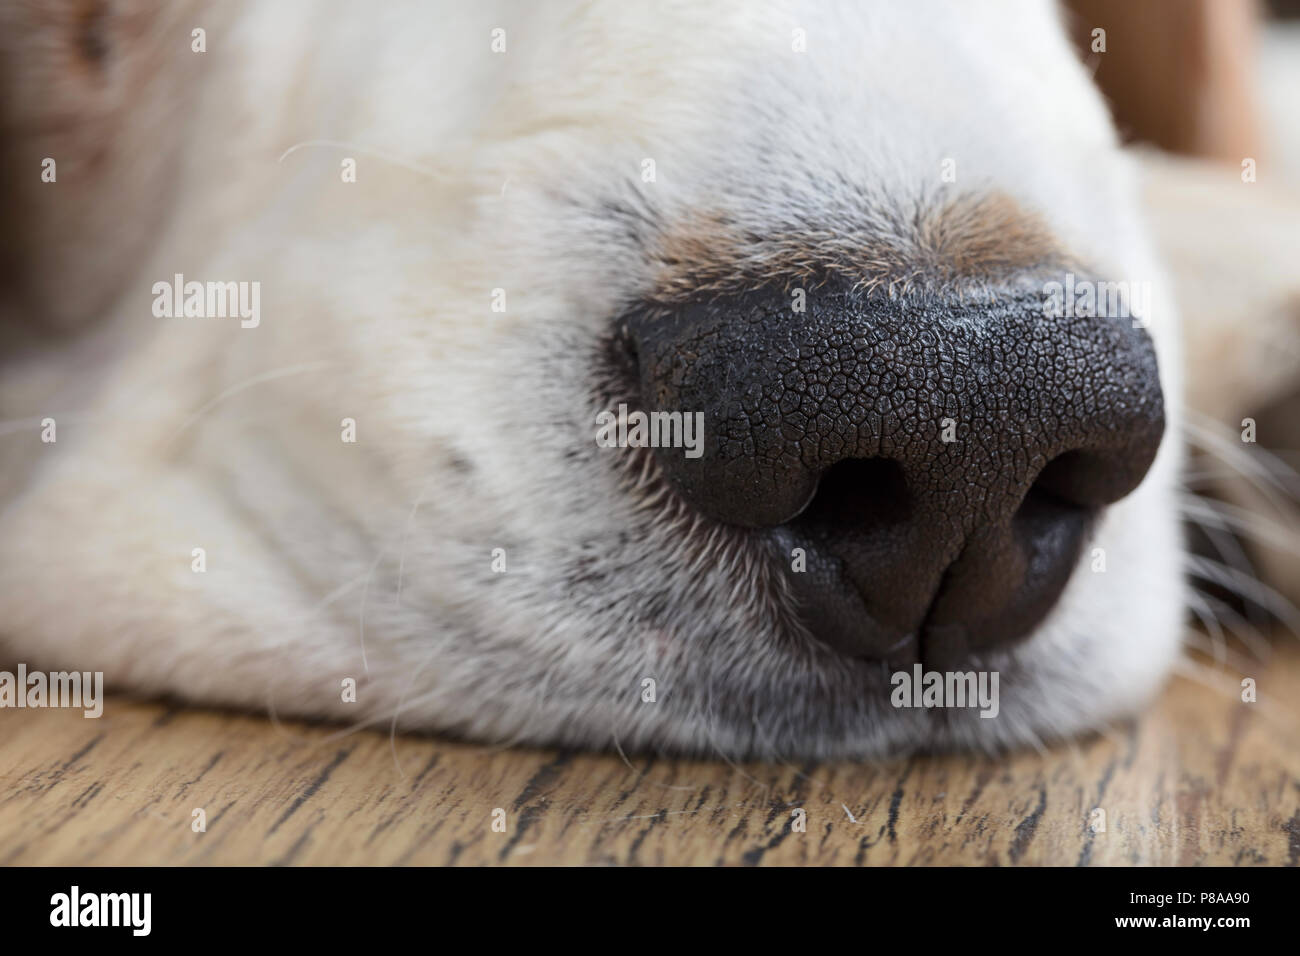 Nahaufnahme von einem Hund Nase, makroaufnahme. Stockfoto